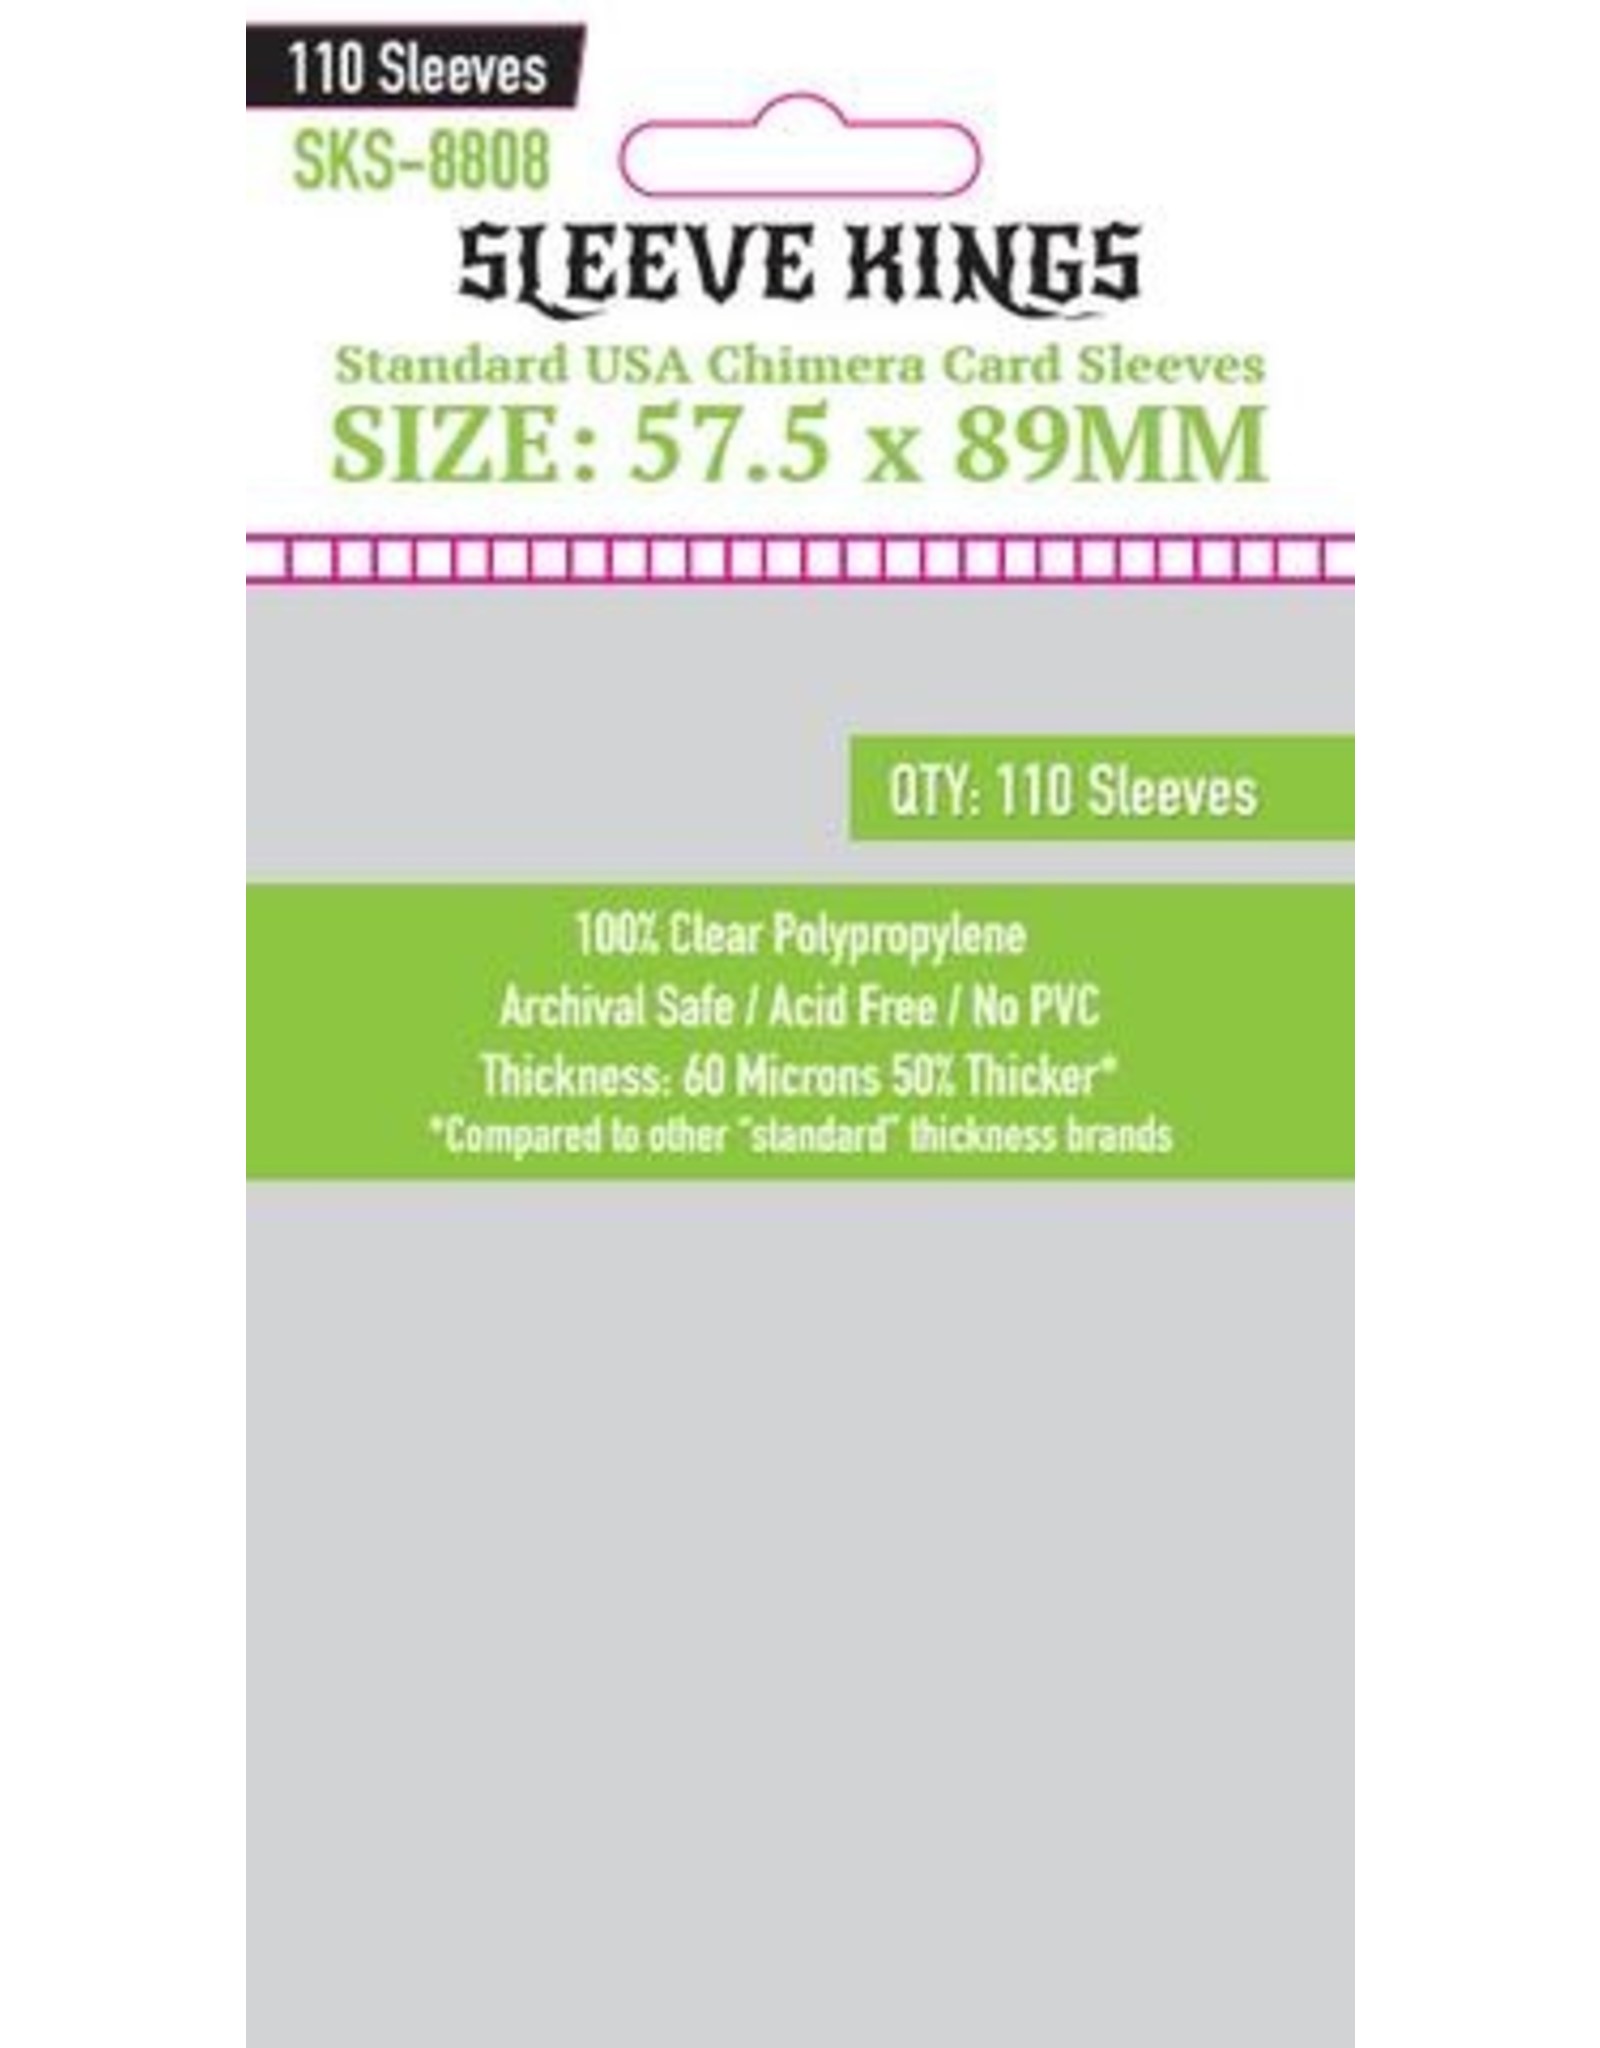 Sleeve Kings Sleeve Kings Standard USA Chimera Card Sleeves (57.5x89mm) - 110 Pack